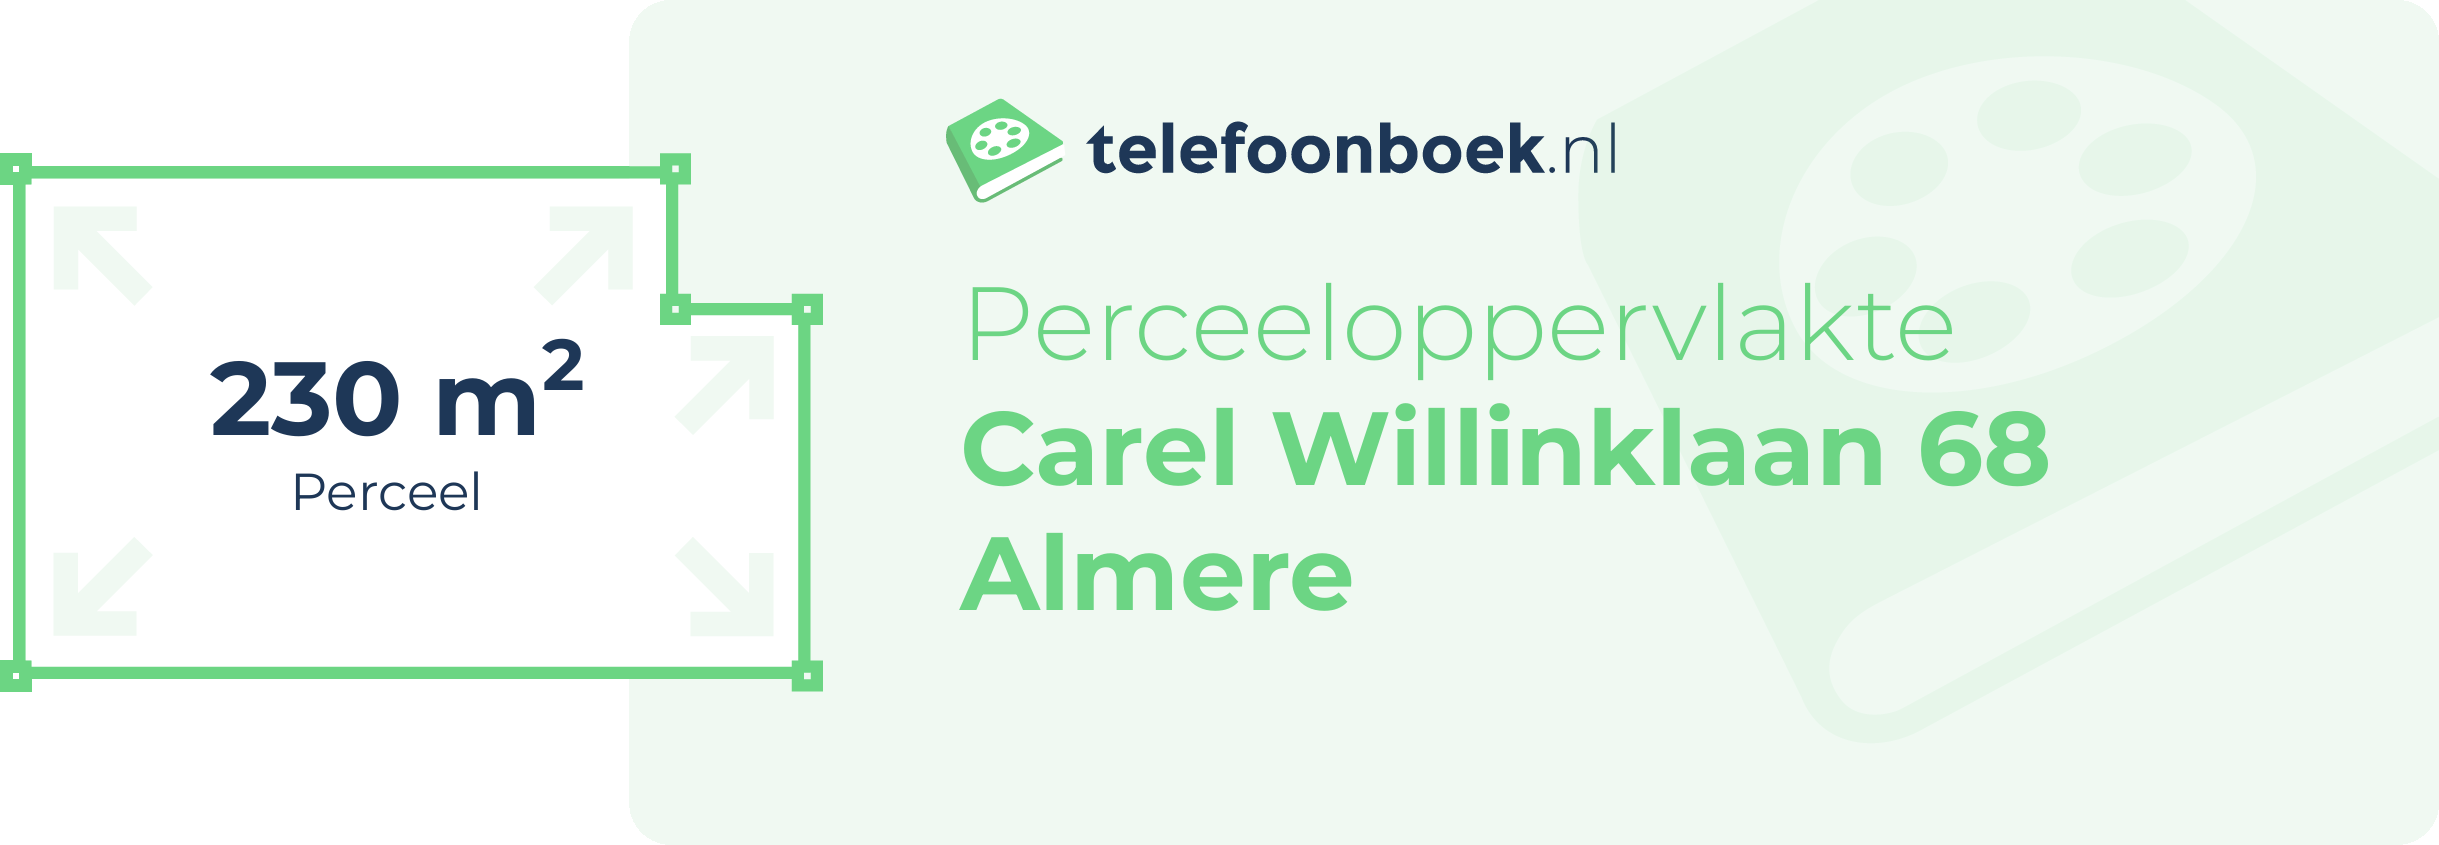 Perceeloppervlakte Carel Willinklaan 68 Almere